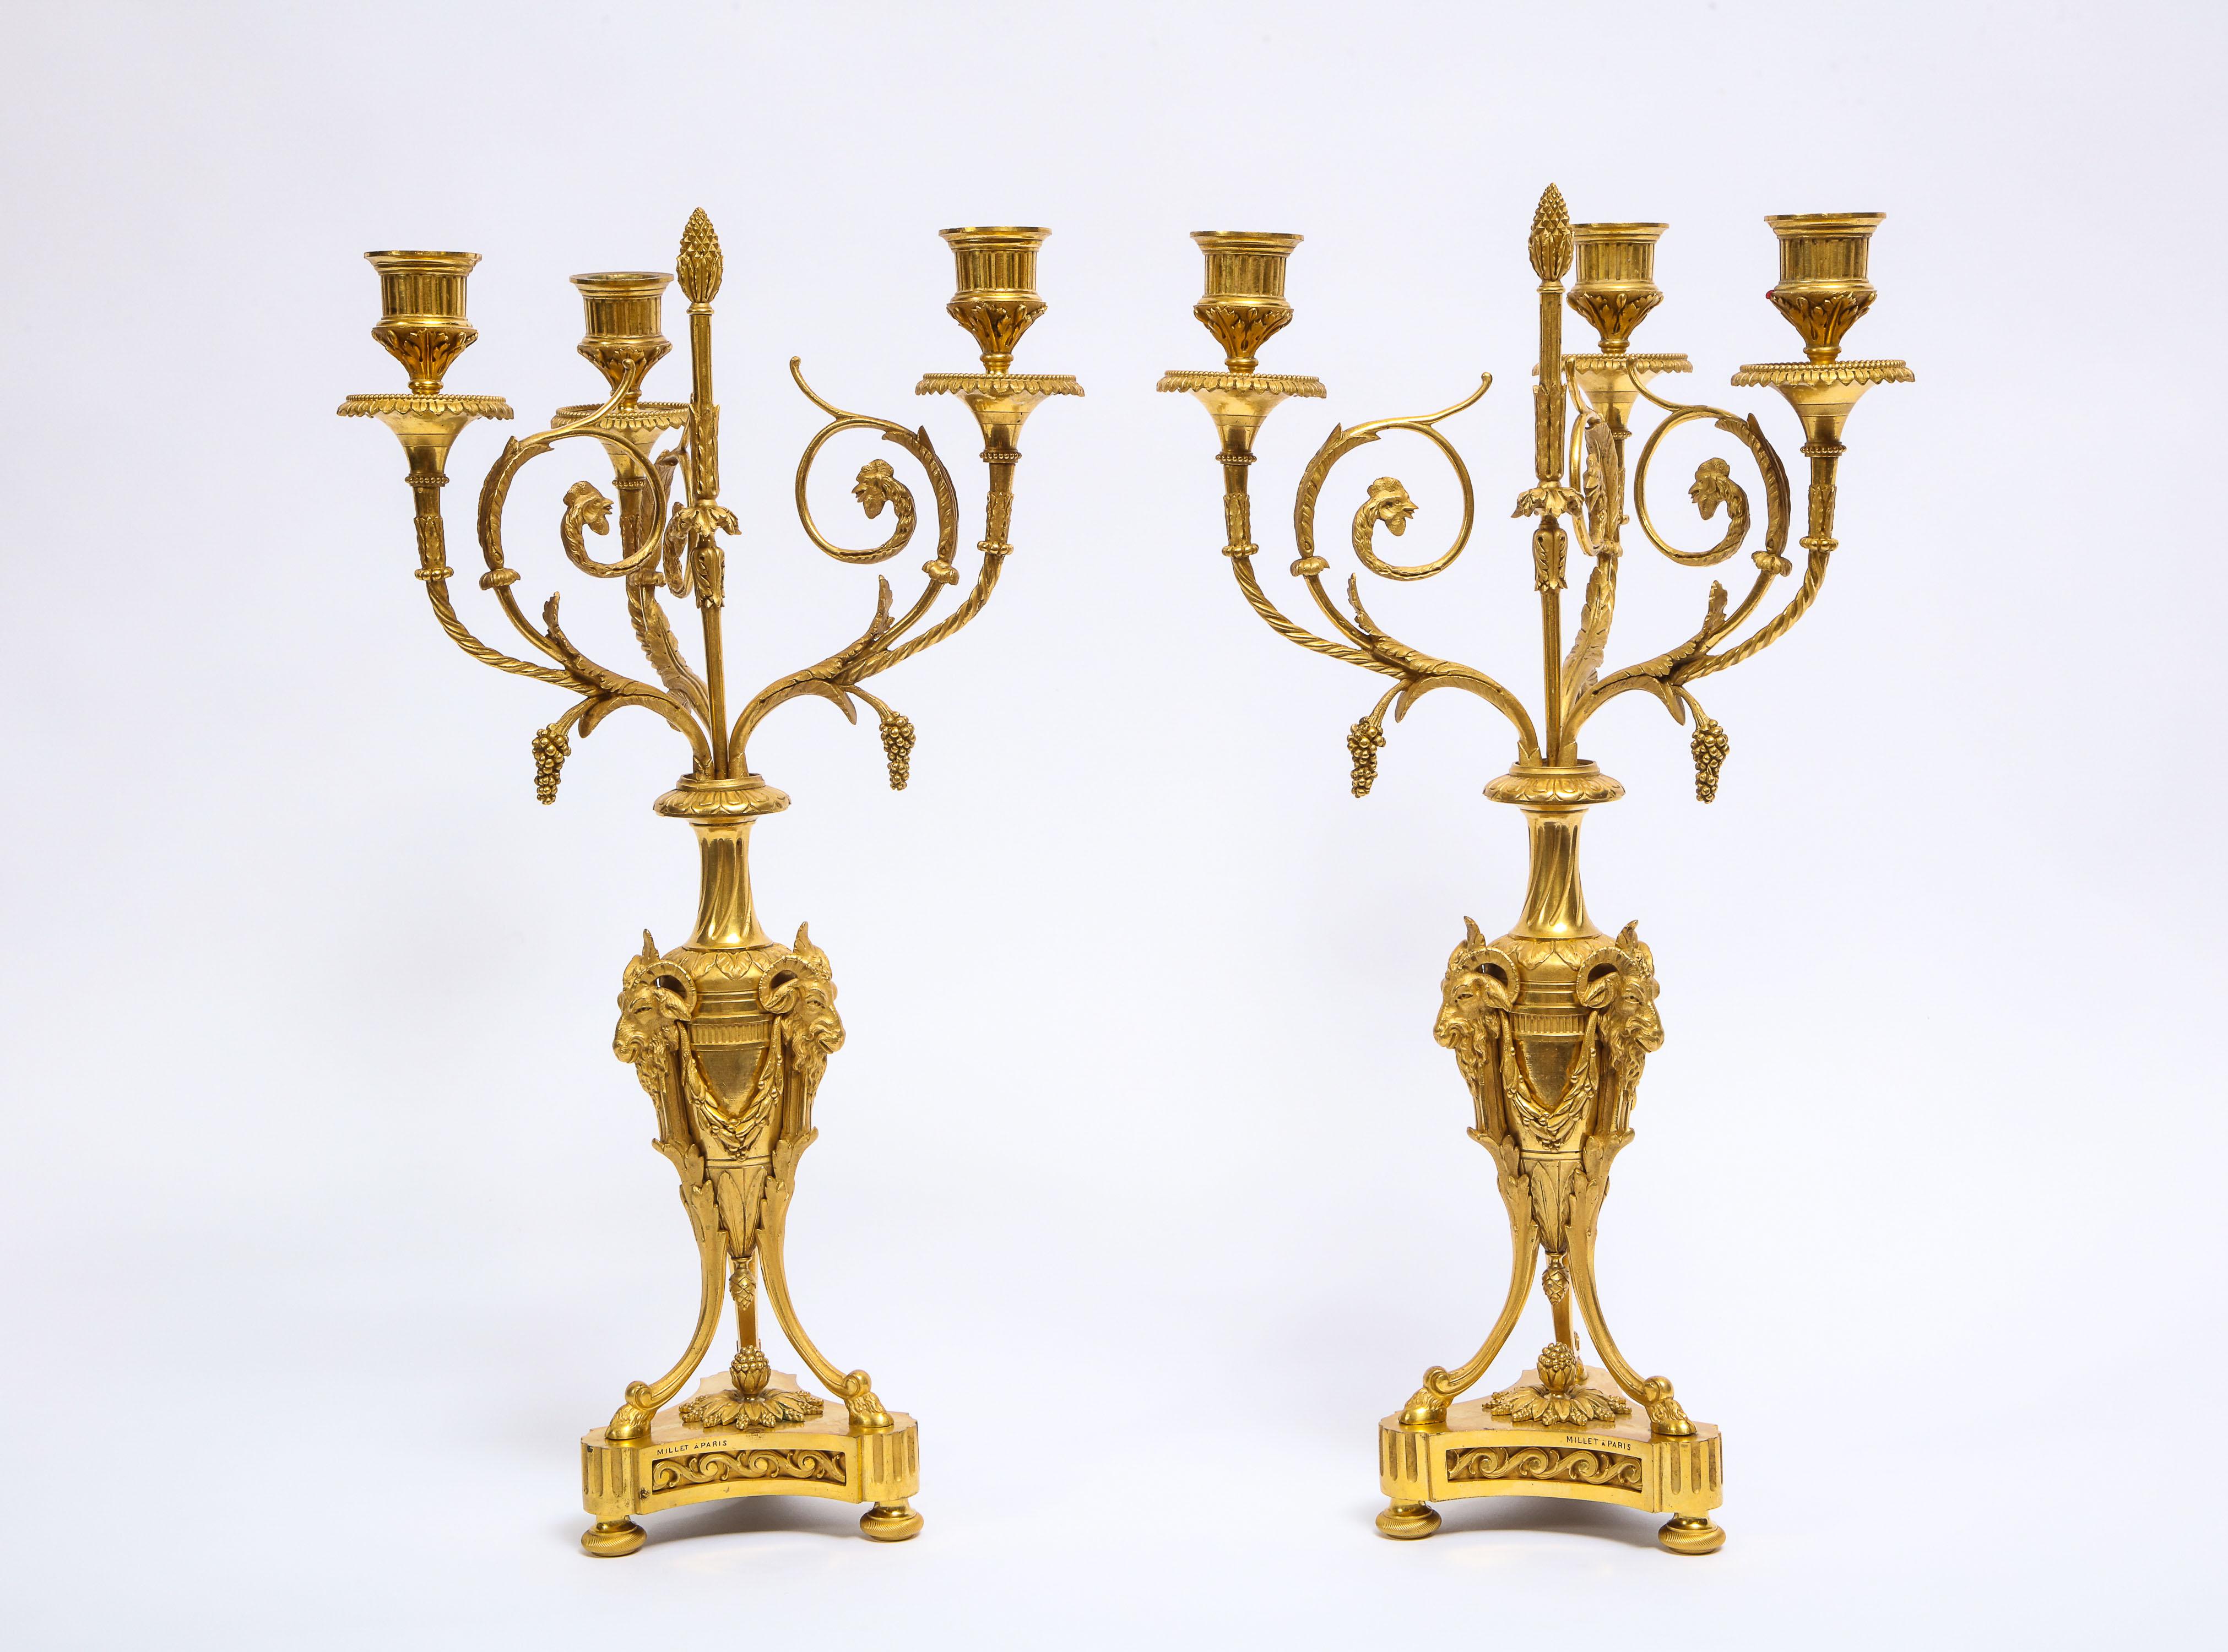 Une fabuleuse paire de candélabres français anciens de style Louis XVI, en bronze doré, à trois bras. Chaque candélabre est finement moulé, puis rehaussé de bronze doré de la plus haute qualité et ciselé à la main, ce qui donne lieu à une quantité